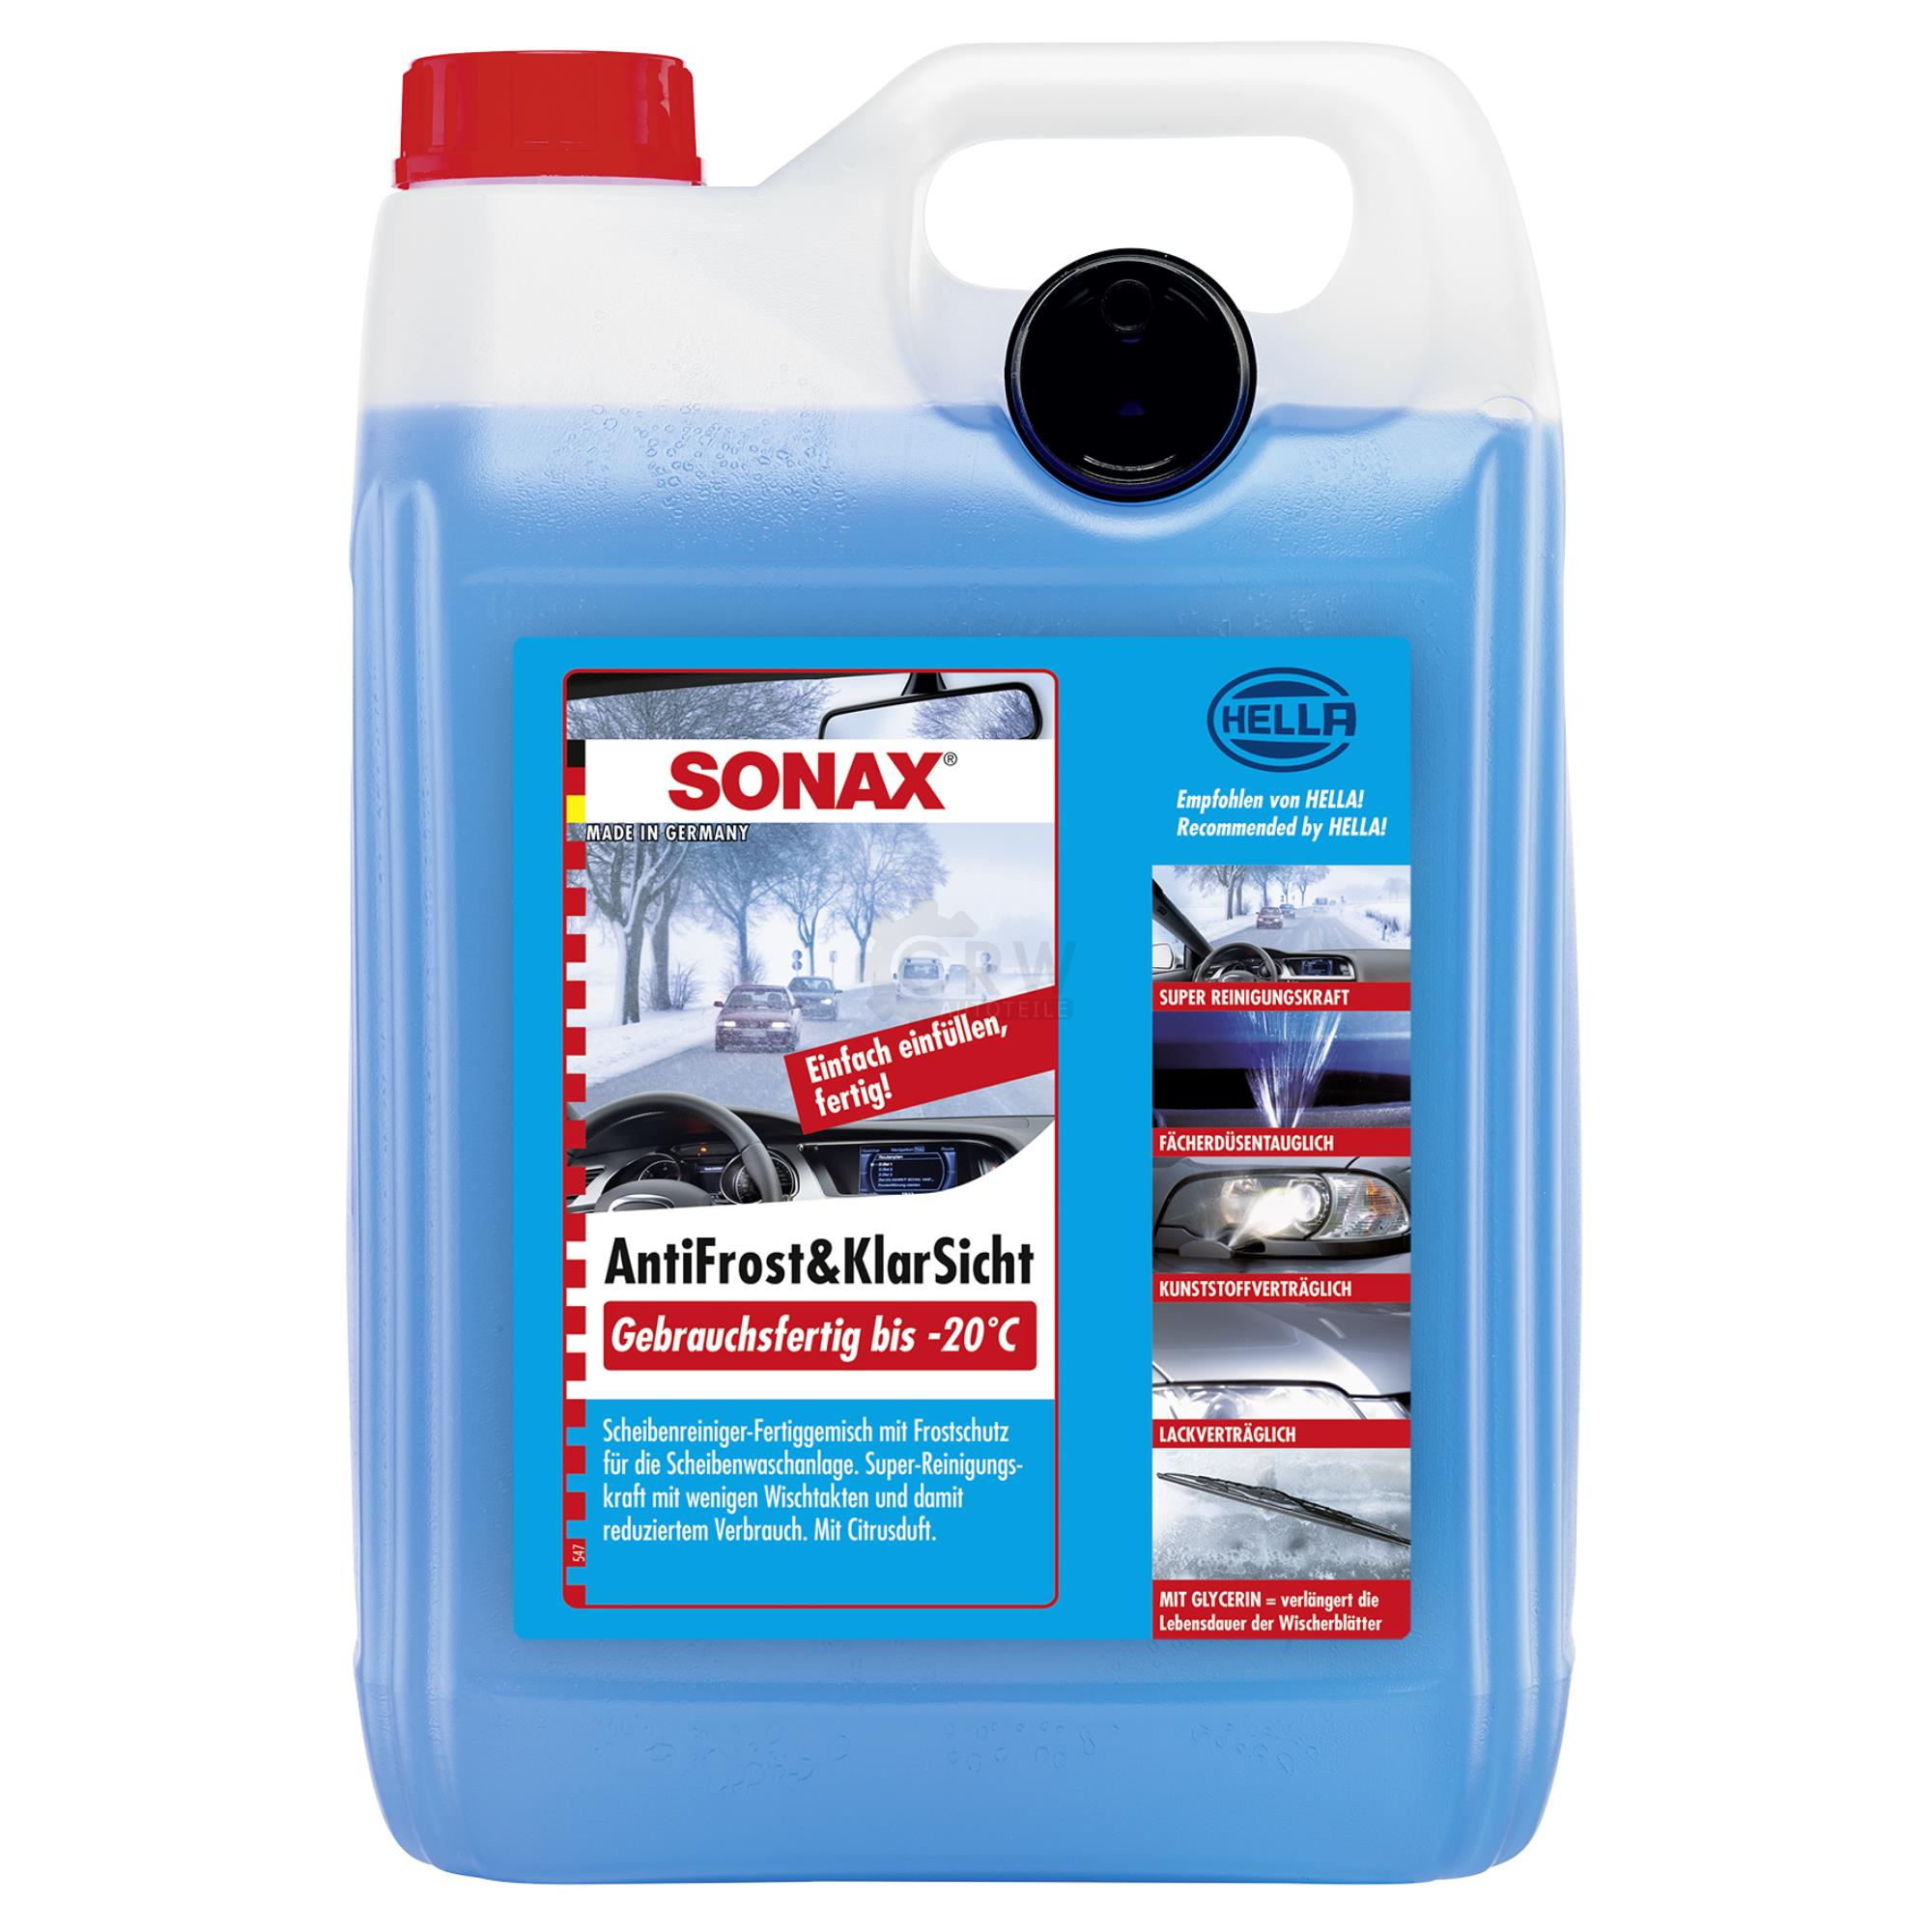 SONAX 03325000  AntiFrost&KlarSicht gebrauchsfertig bis -20°C 5 l